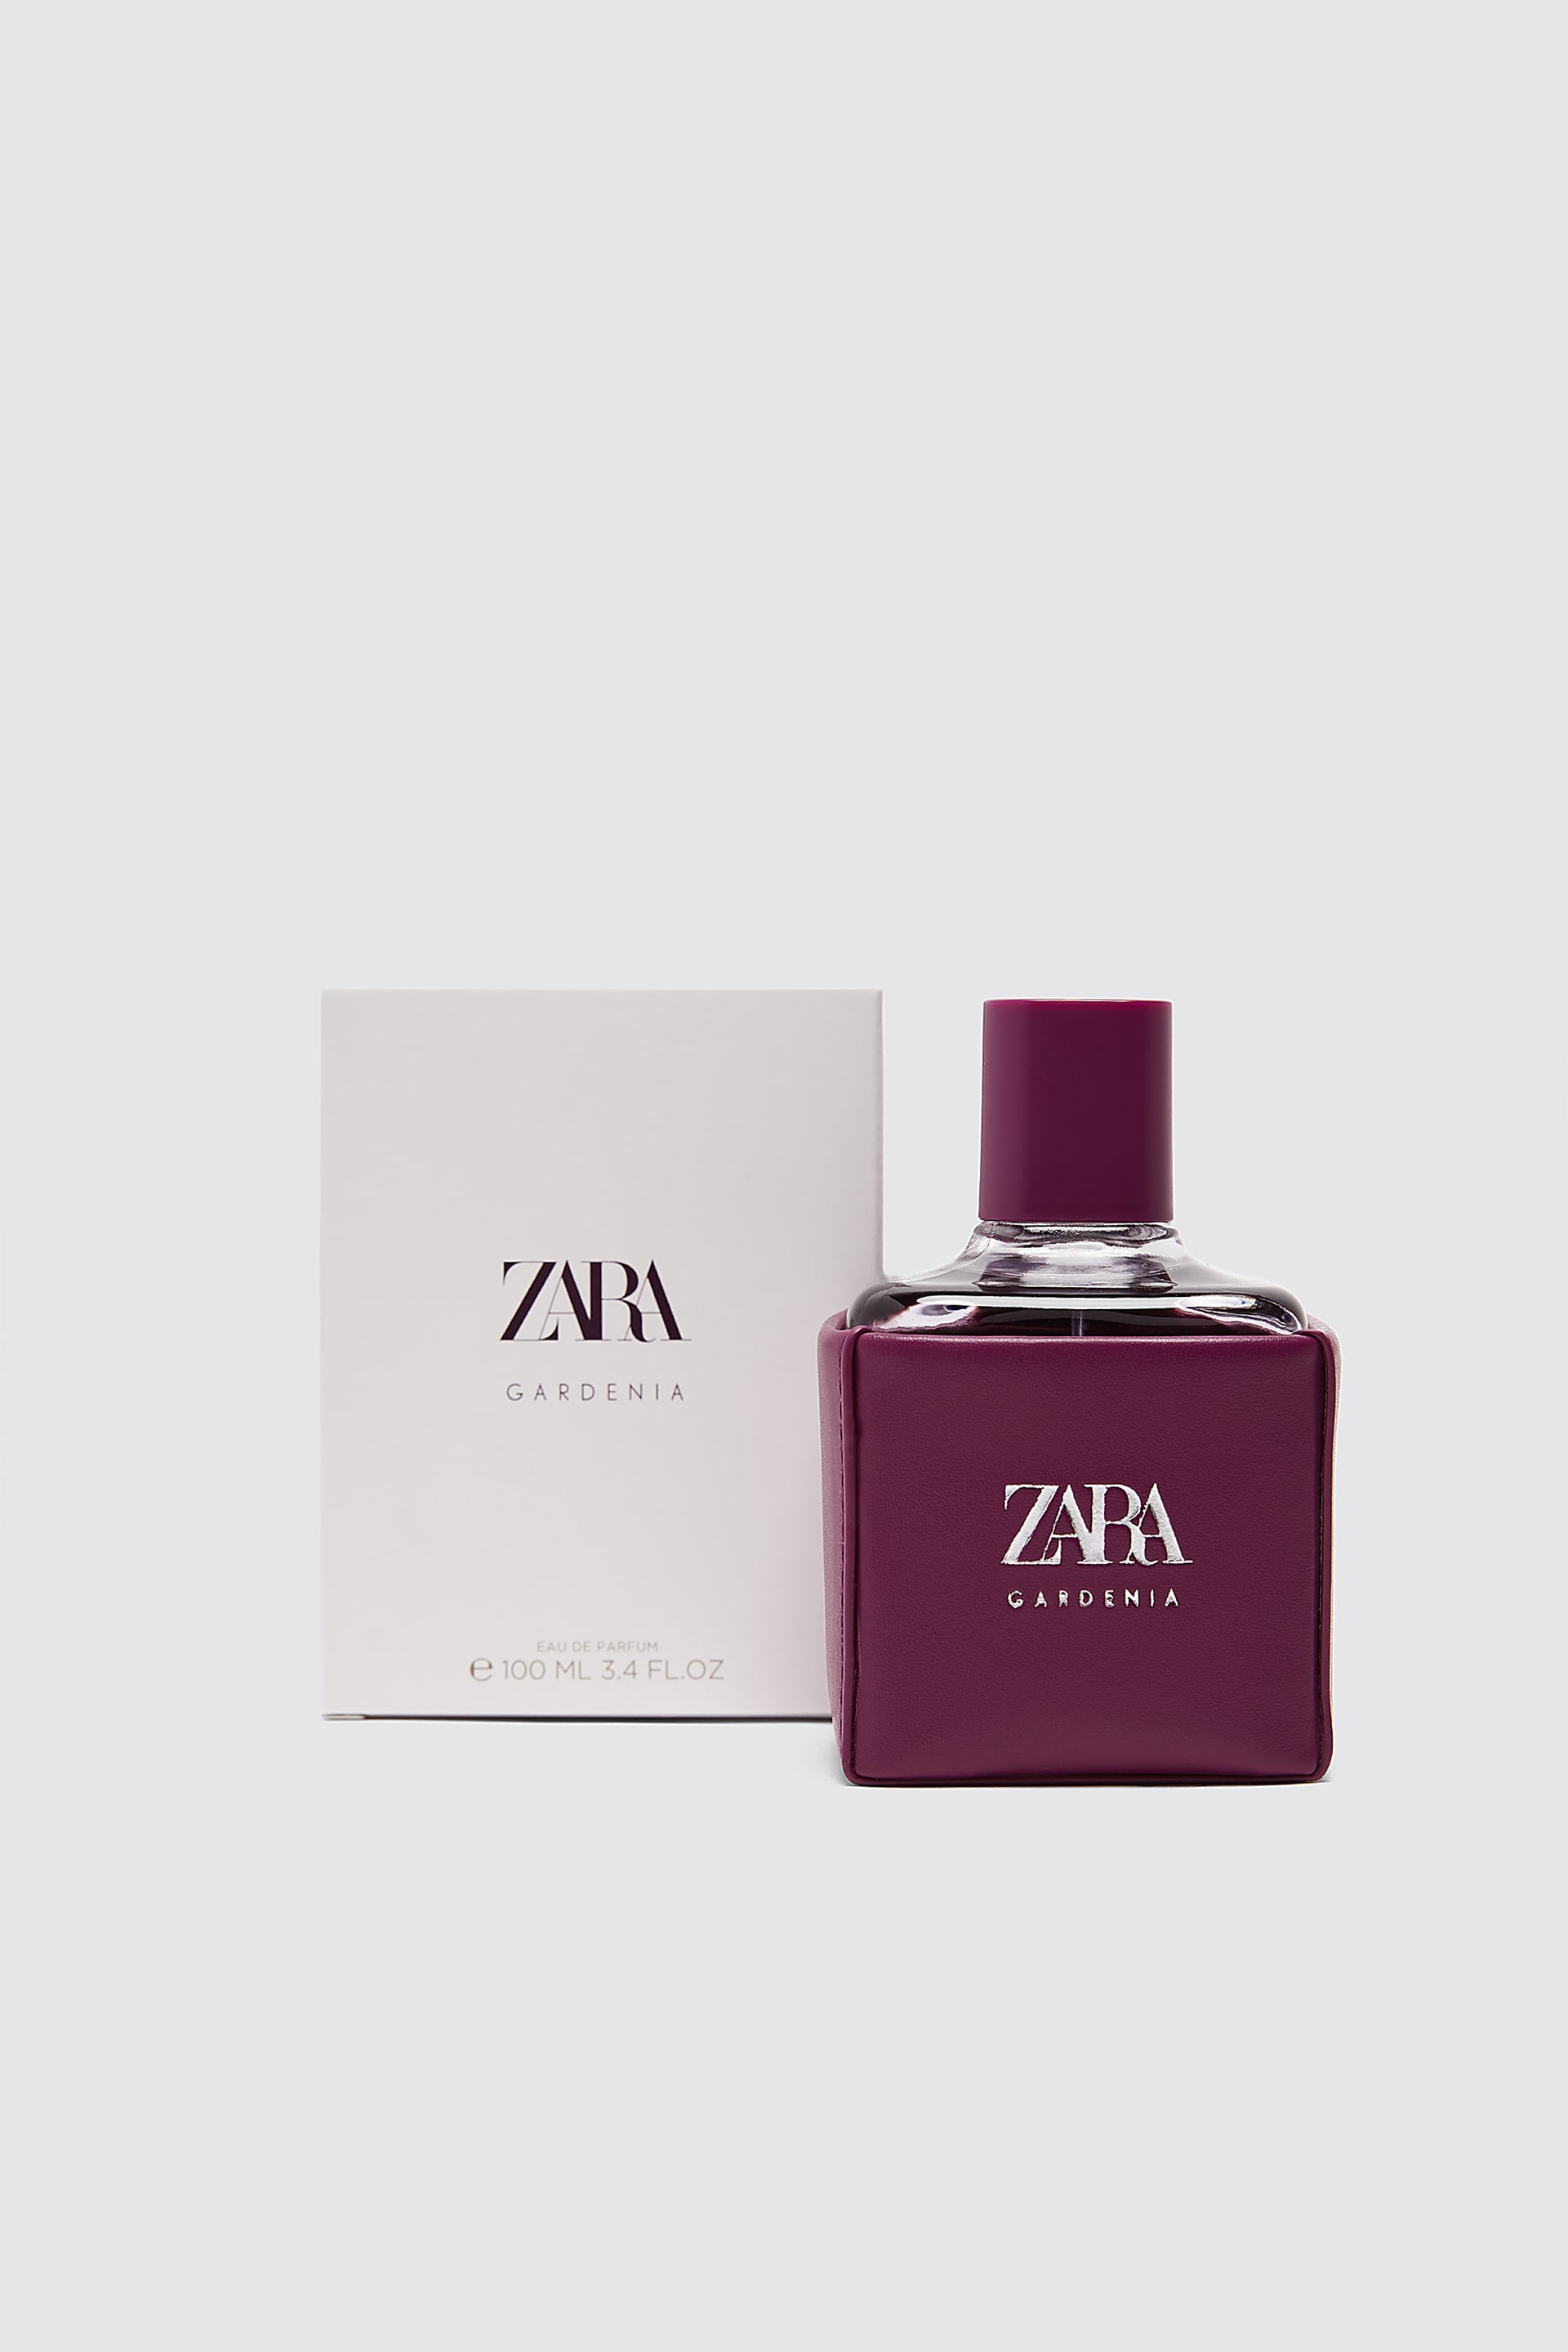 Zara gardenia 100 мл. Zara духи женские. Купить духи zara